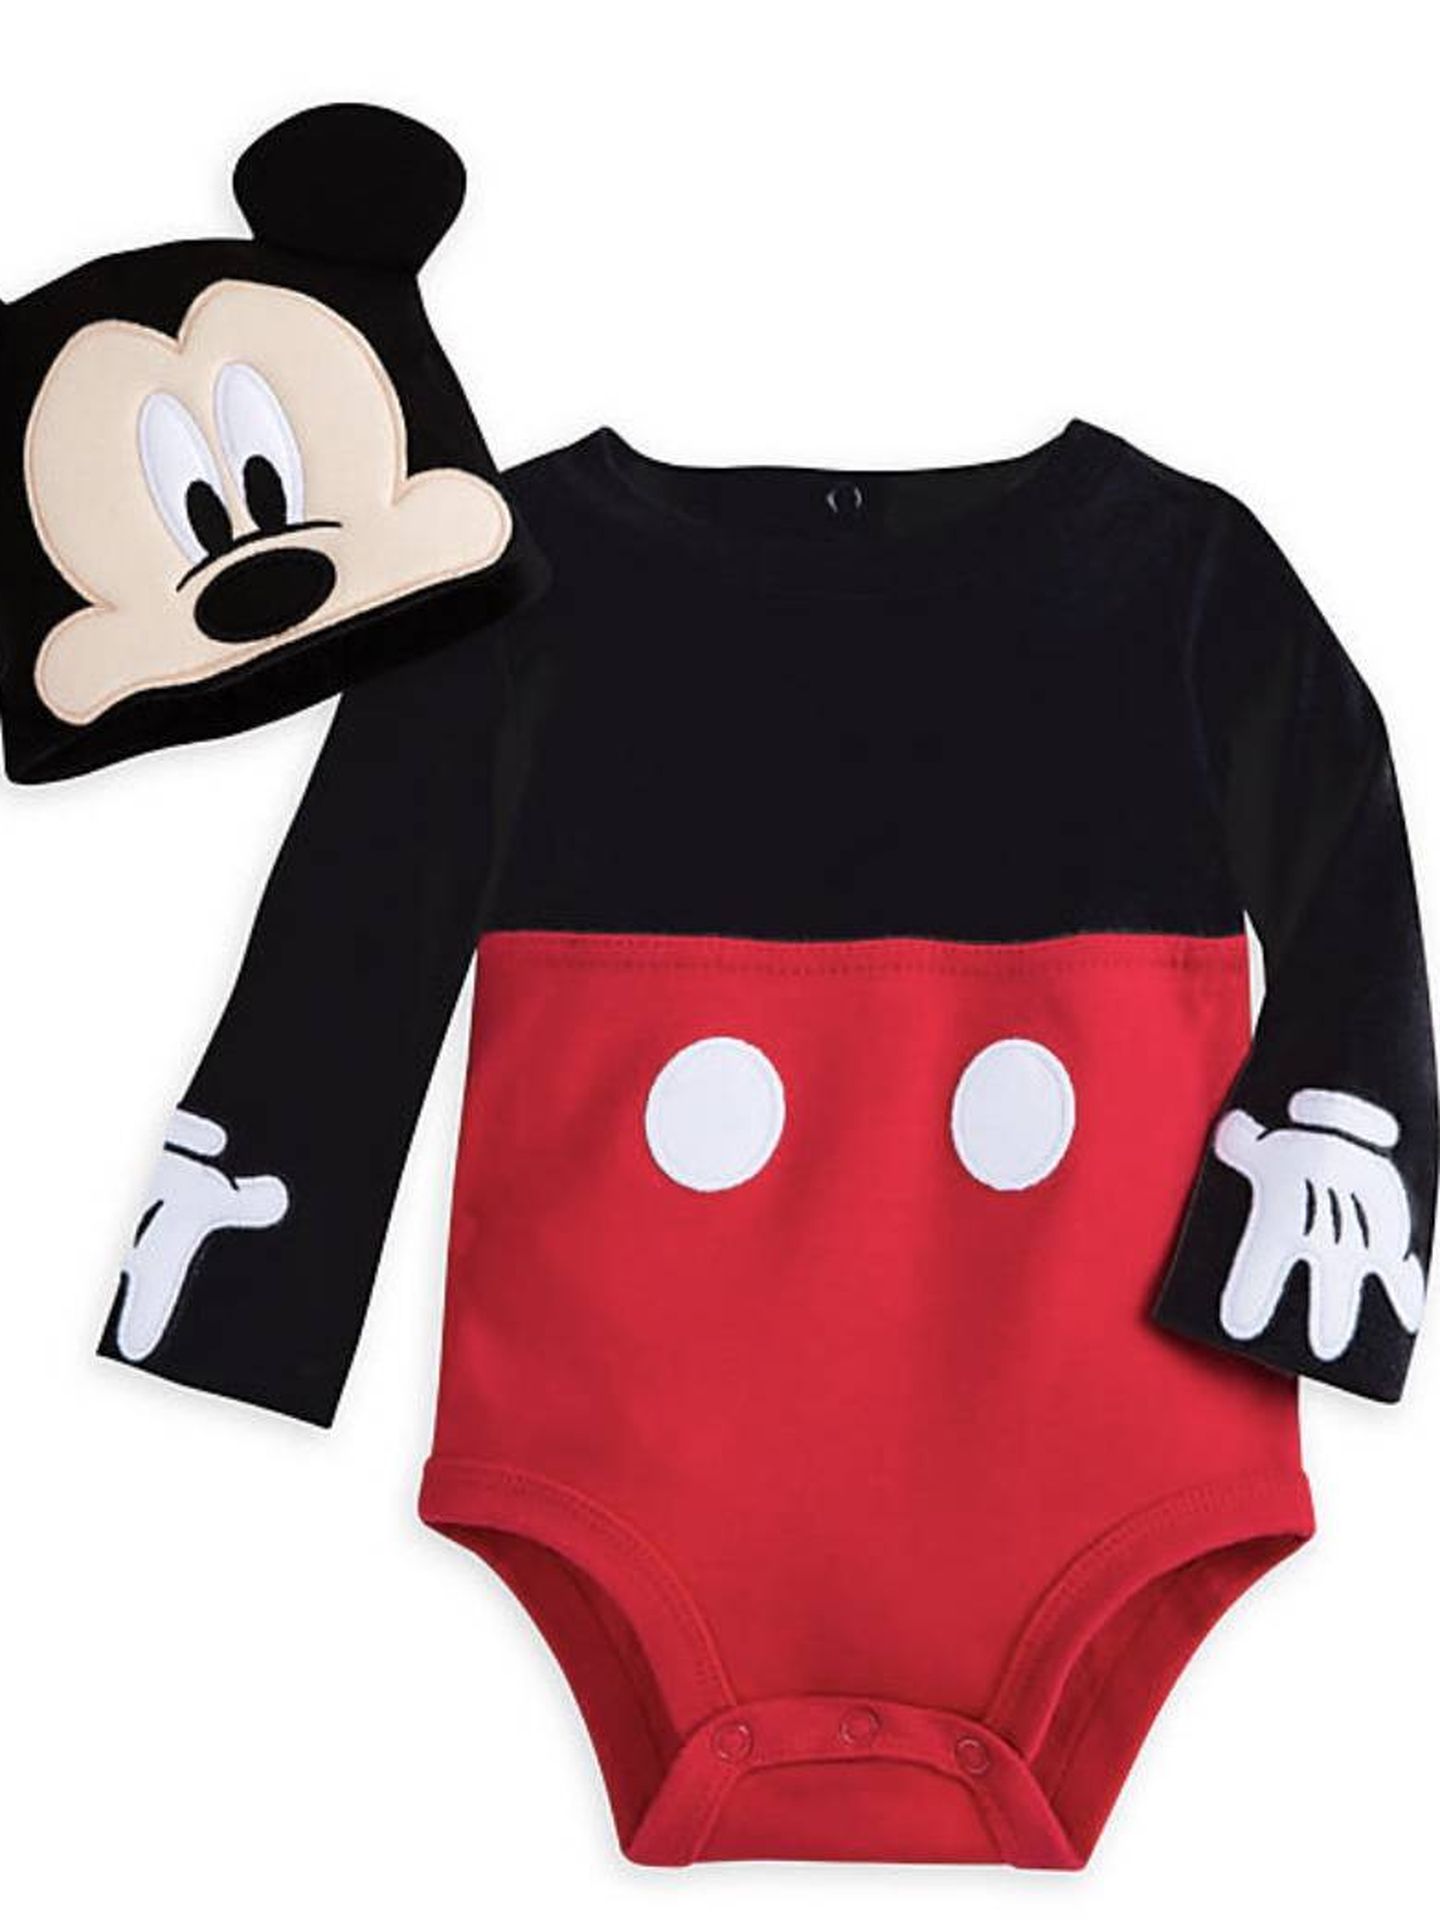 Para los más pequeños, disfraz de Mickey Mouse de Disney Store (14,70 euros).